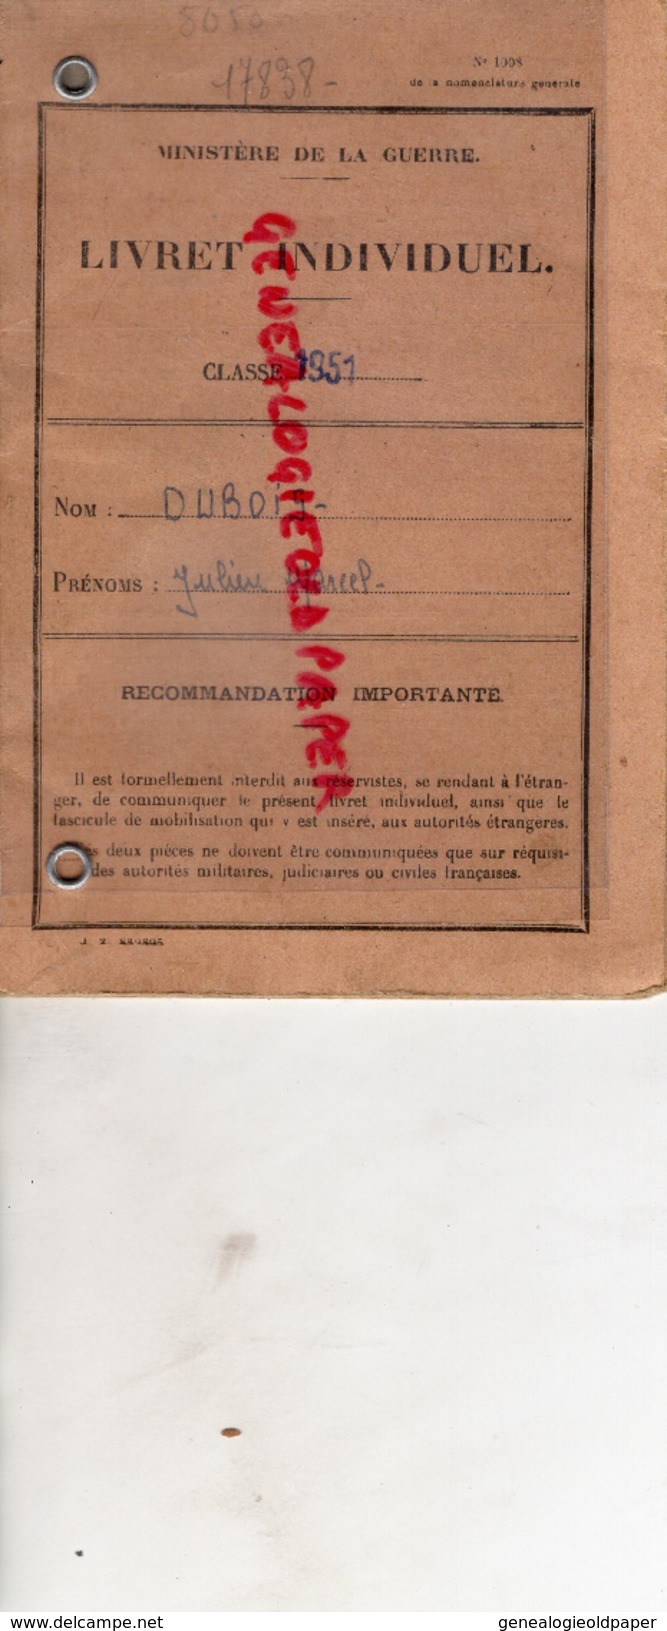 87- CHATEAUNEUF LA FORET- MILITARIA - JULIEN DUBOIS- LIVRET INDIVIDUEL GUERRE CLASSE 1951- POITIERS- - Documents Historiques